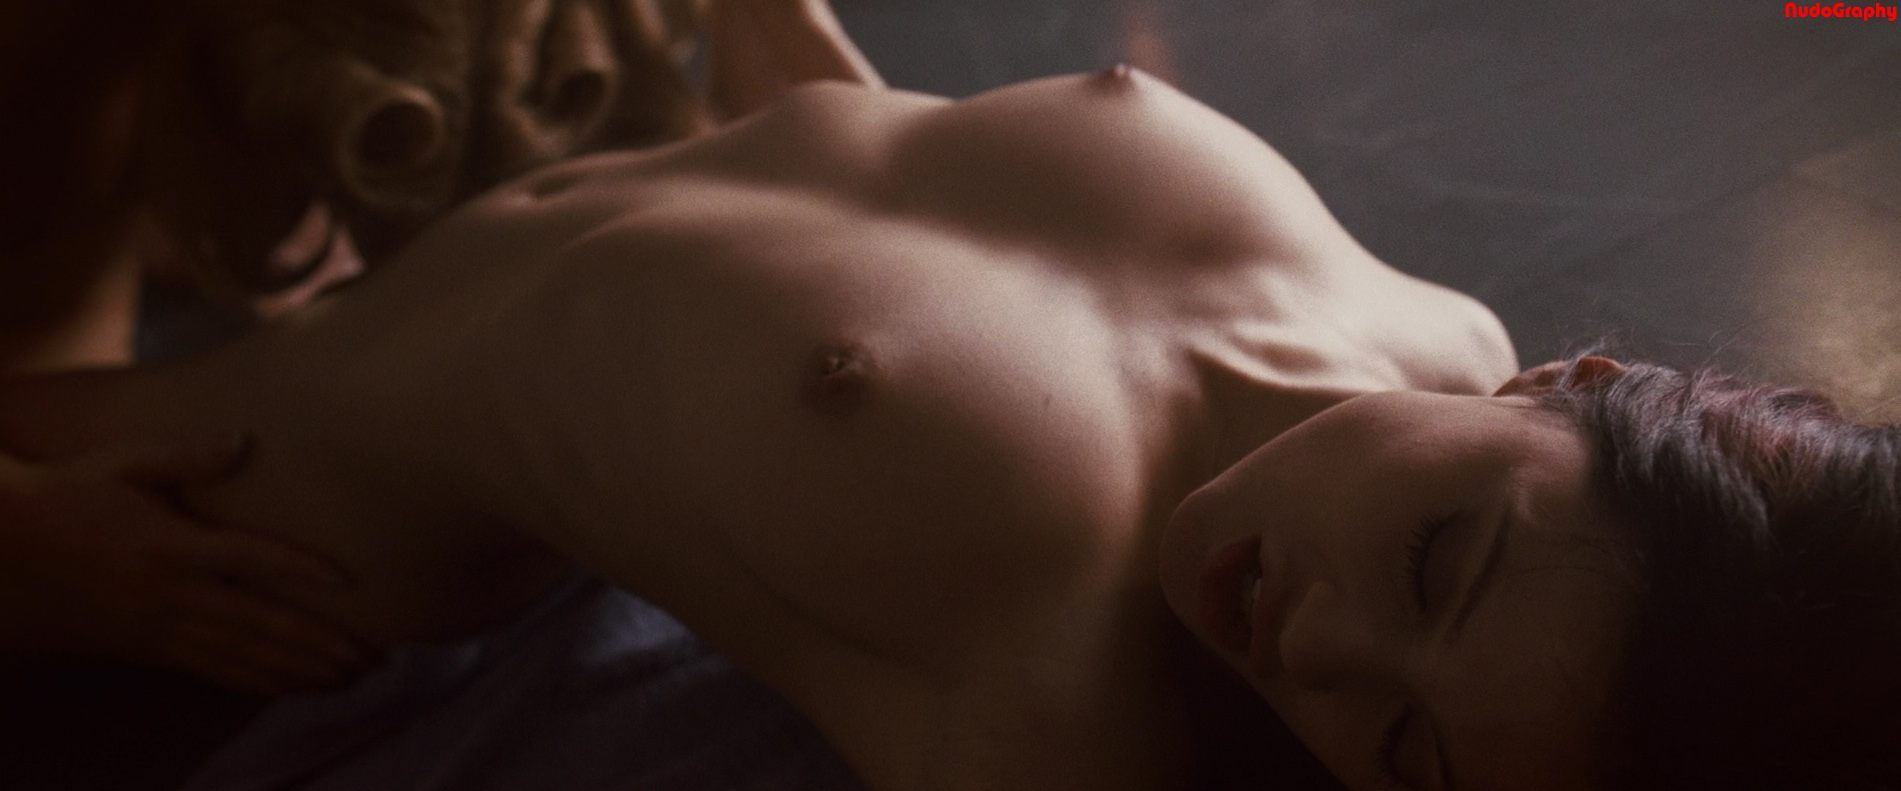 Natasha rothwell nude - 🧡 Natasha Henstridge showing her big tits in nude ...